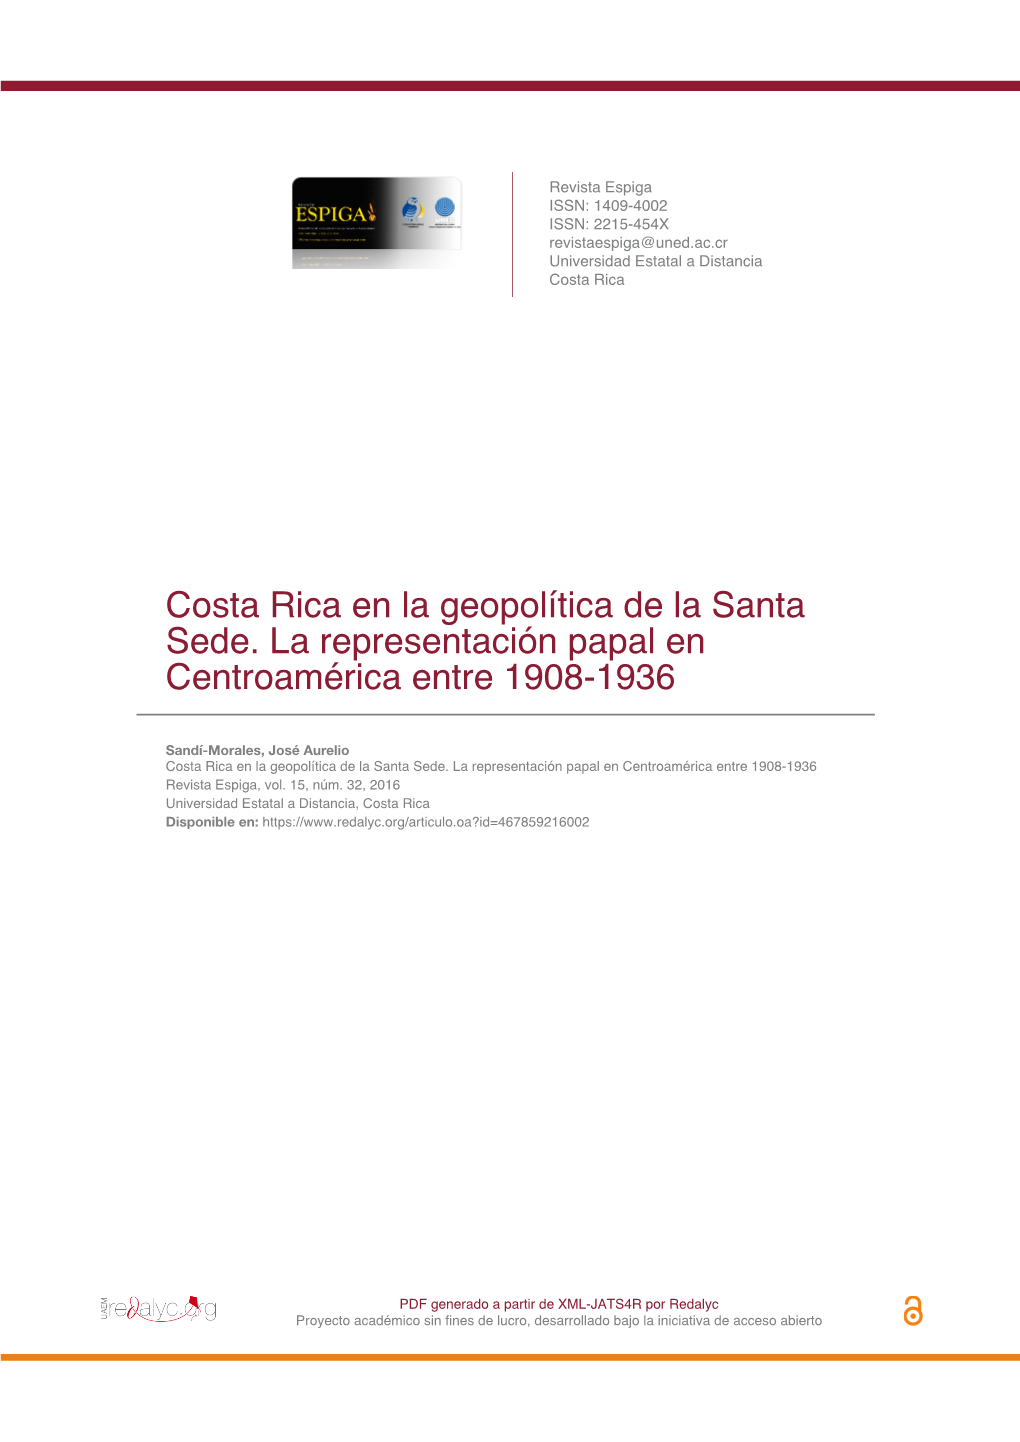 Costa Rica En La Geopolítica De La Santa Sede. La Representación Papal En Centroamérica Entre 1908-1936